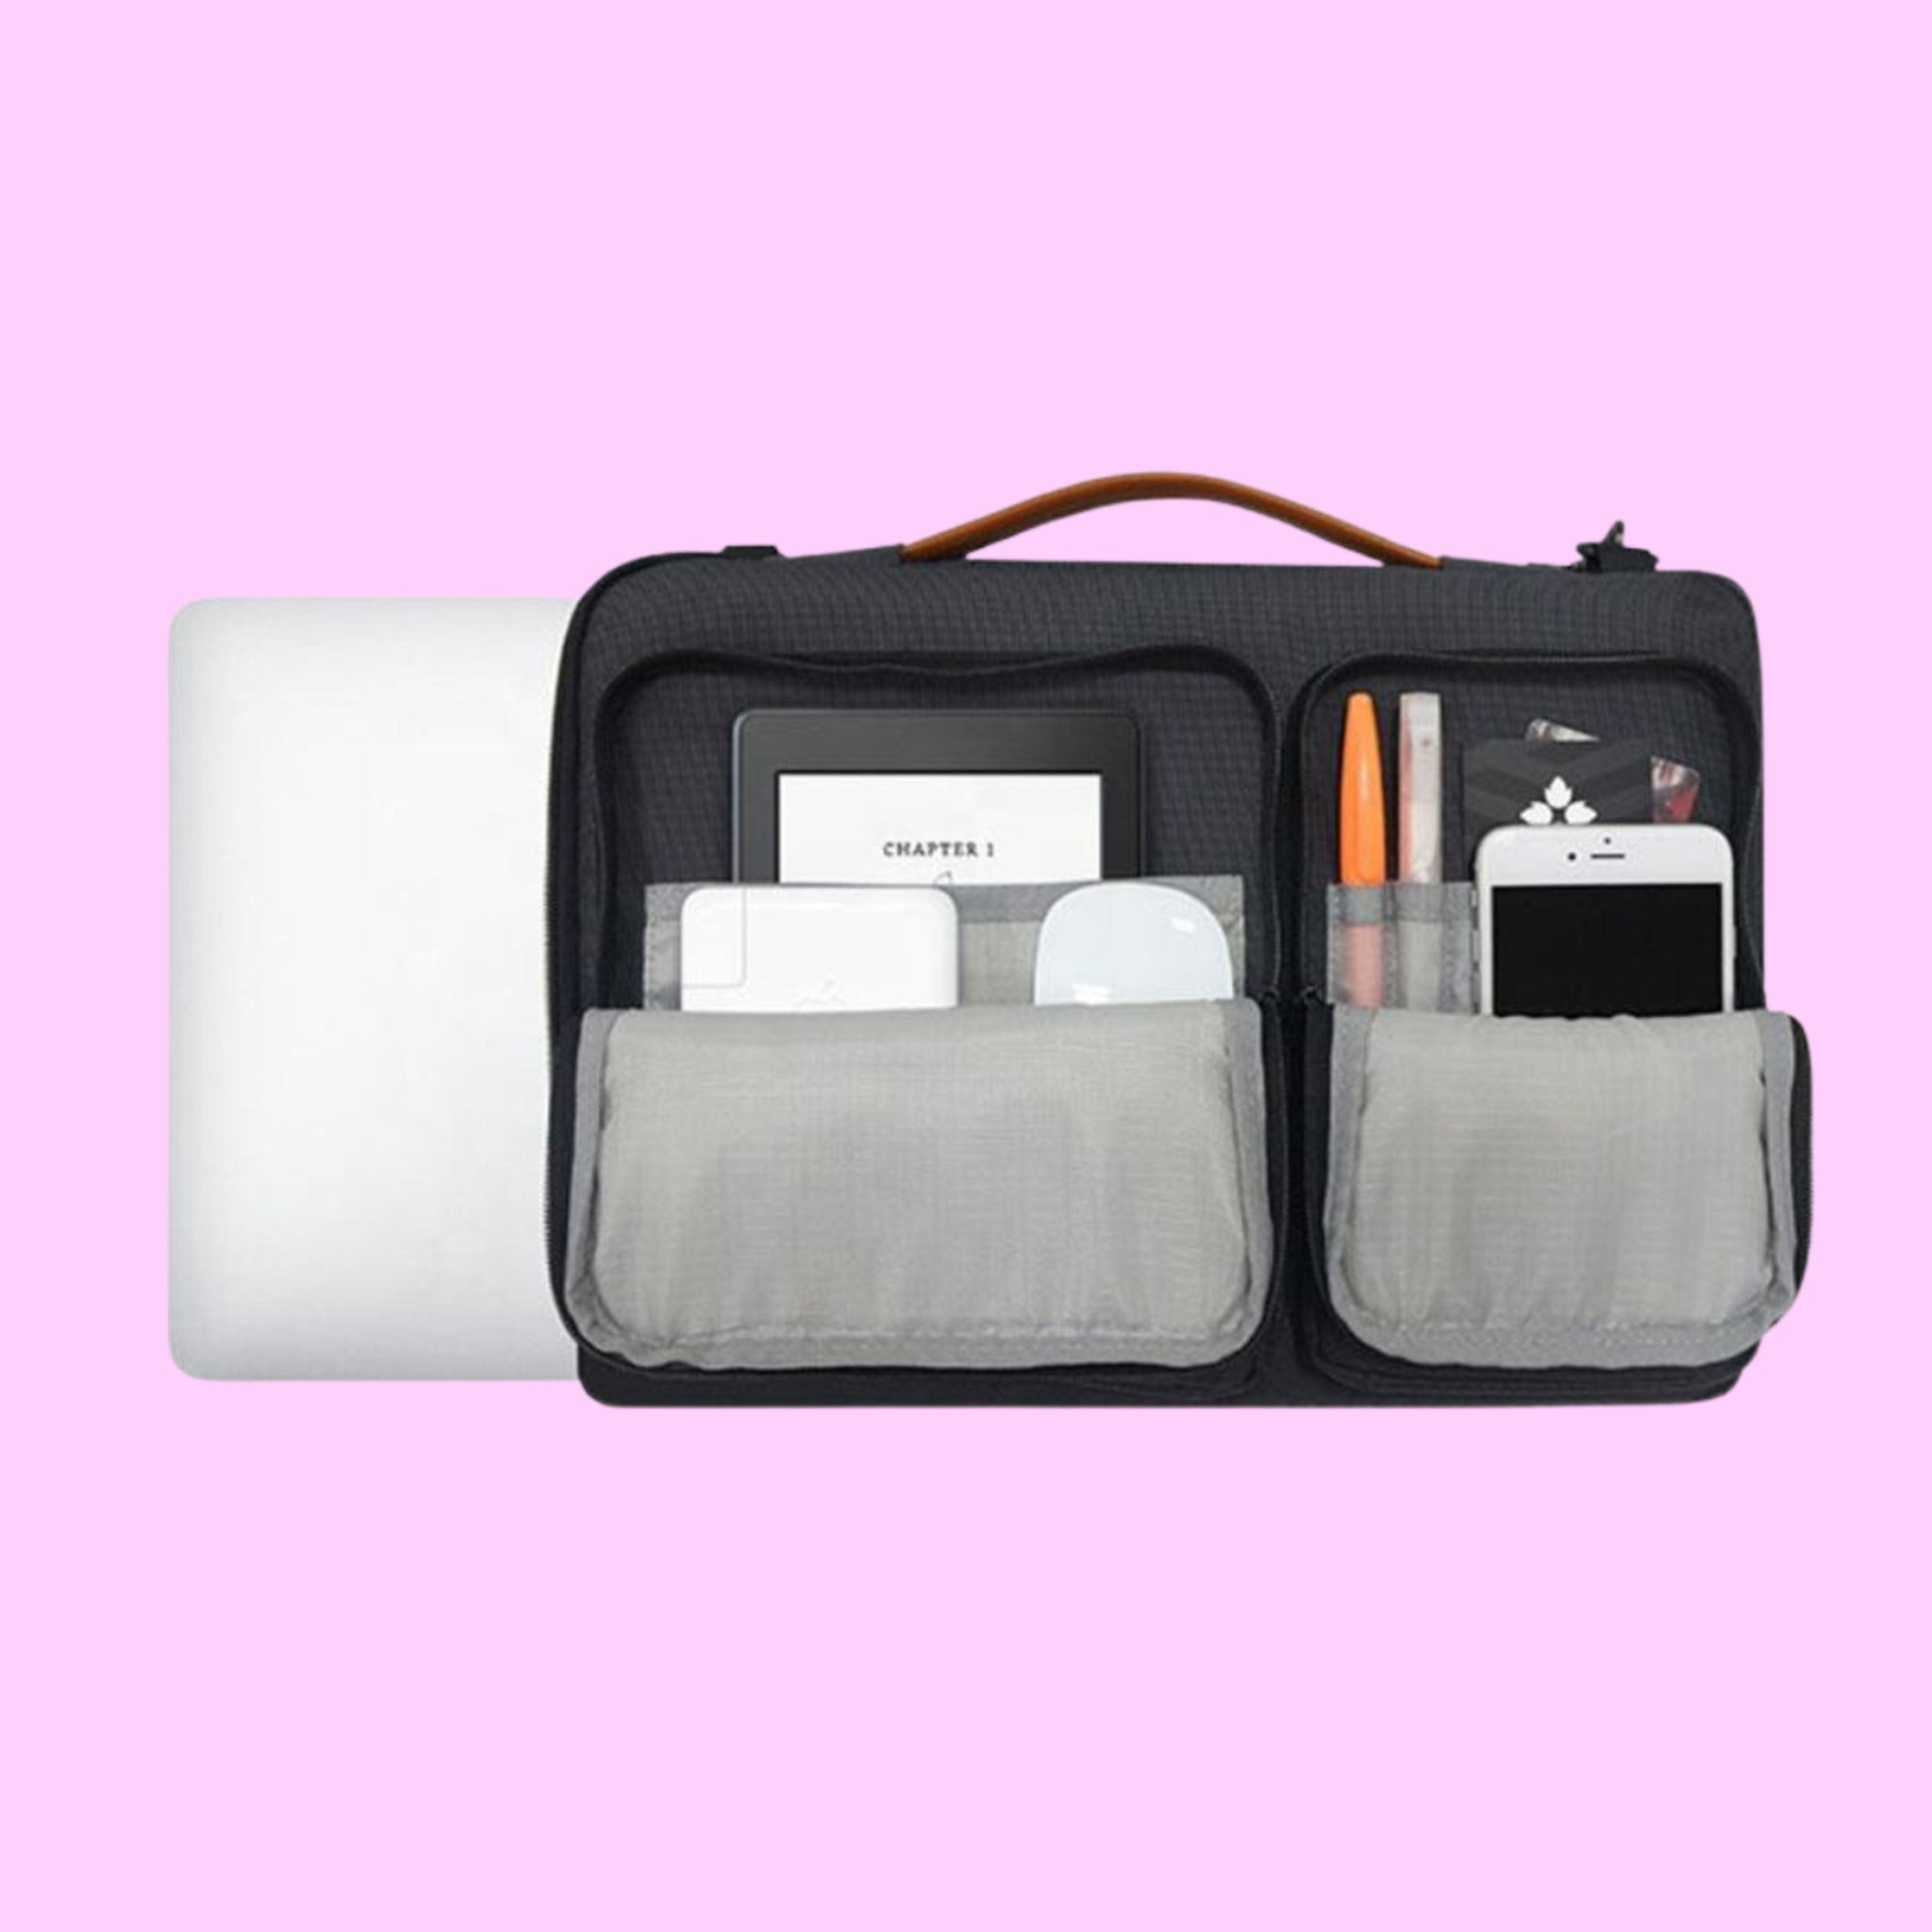 Gear Master Waterproof Laptop Multi-Functional Bag